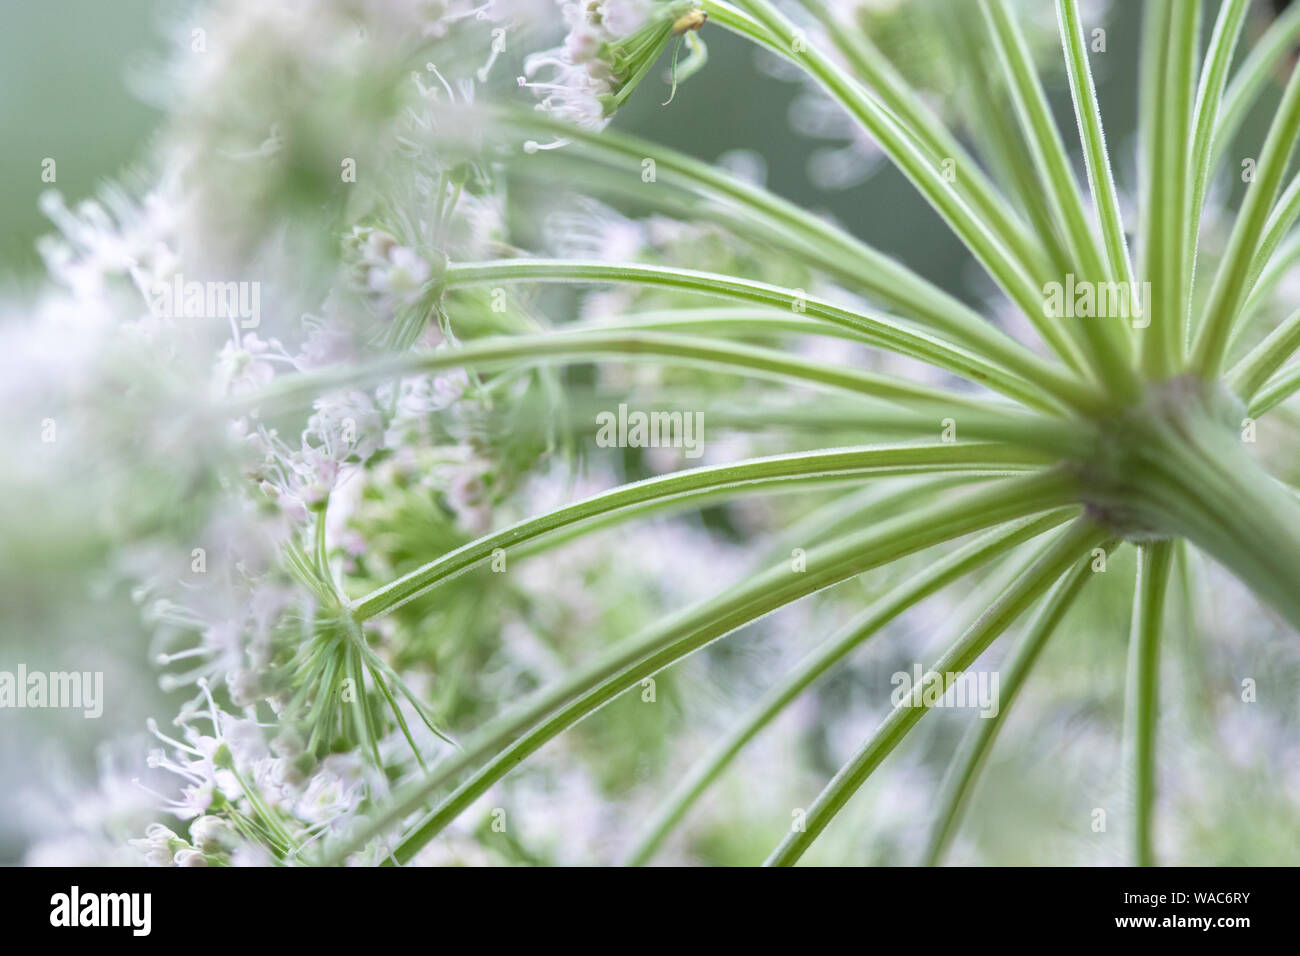 Branca ursina (Heracleum mantegazzianum) Foto de stock